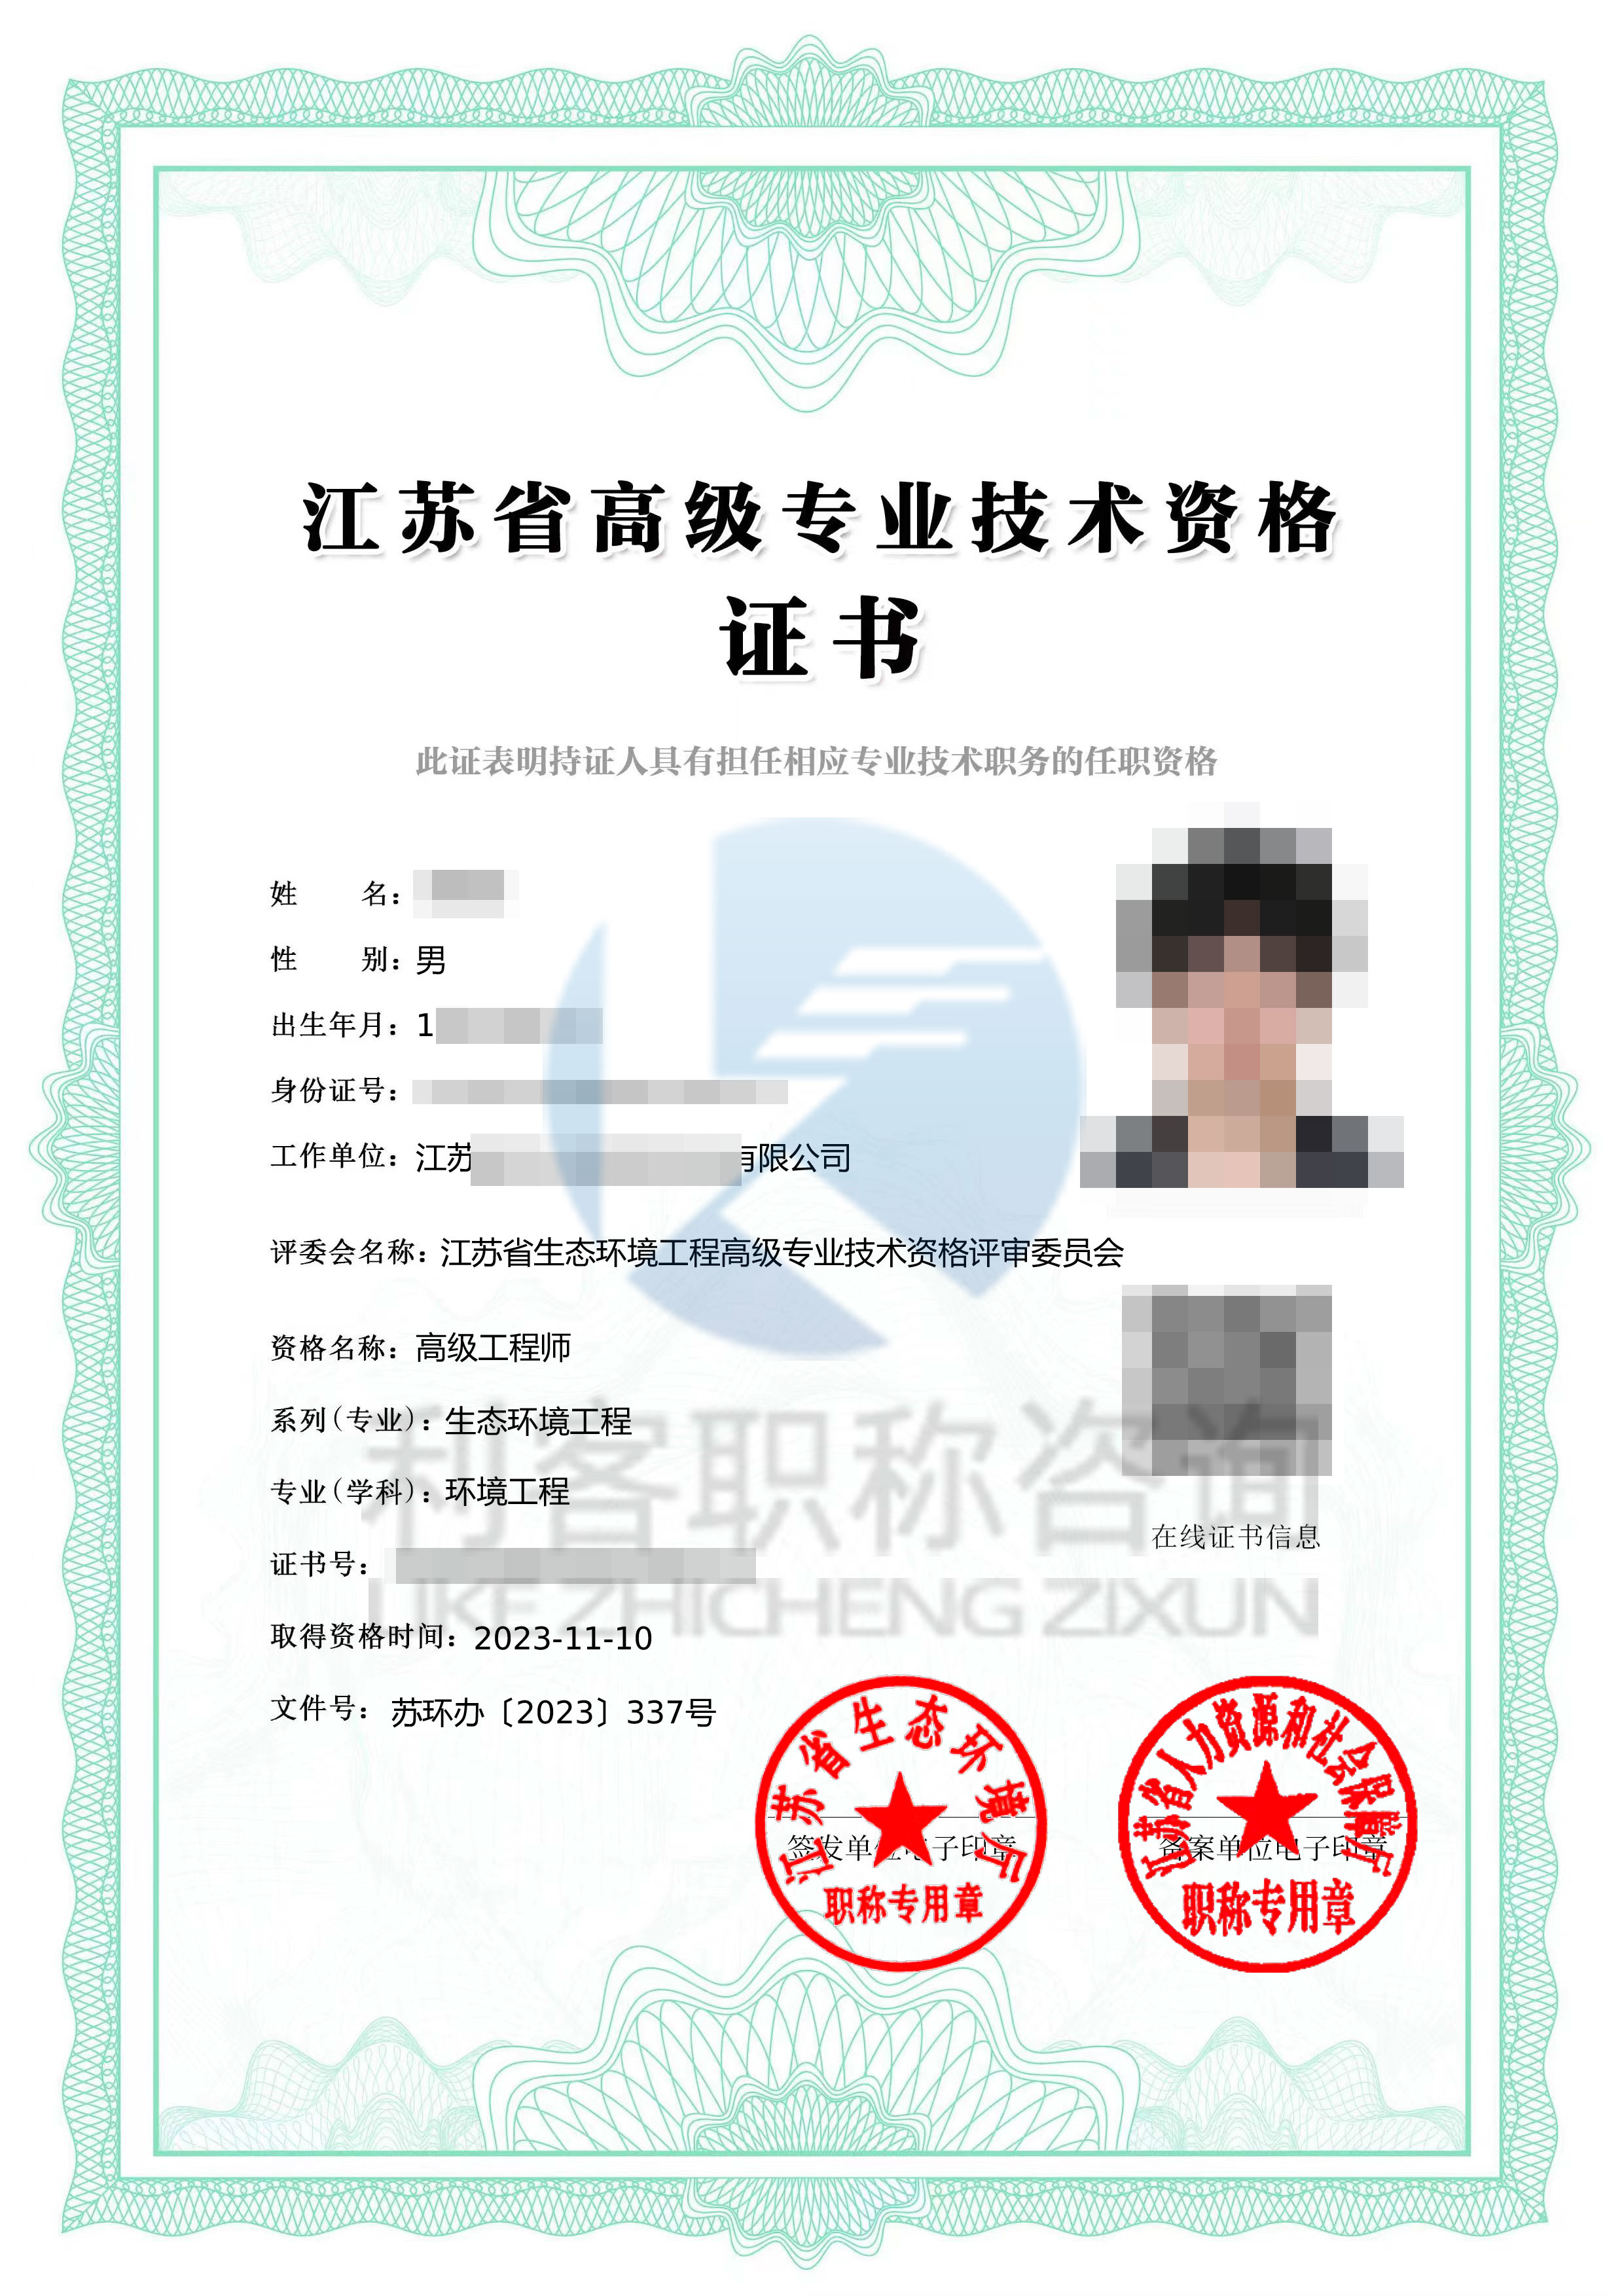 江苏副高级环境职称高级环境工程师证书展示